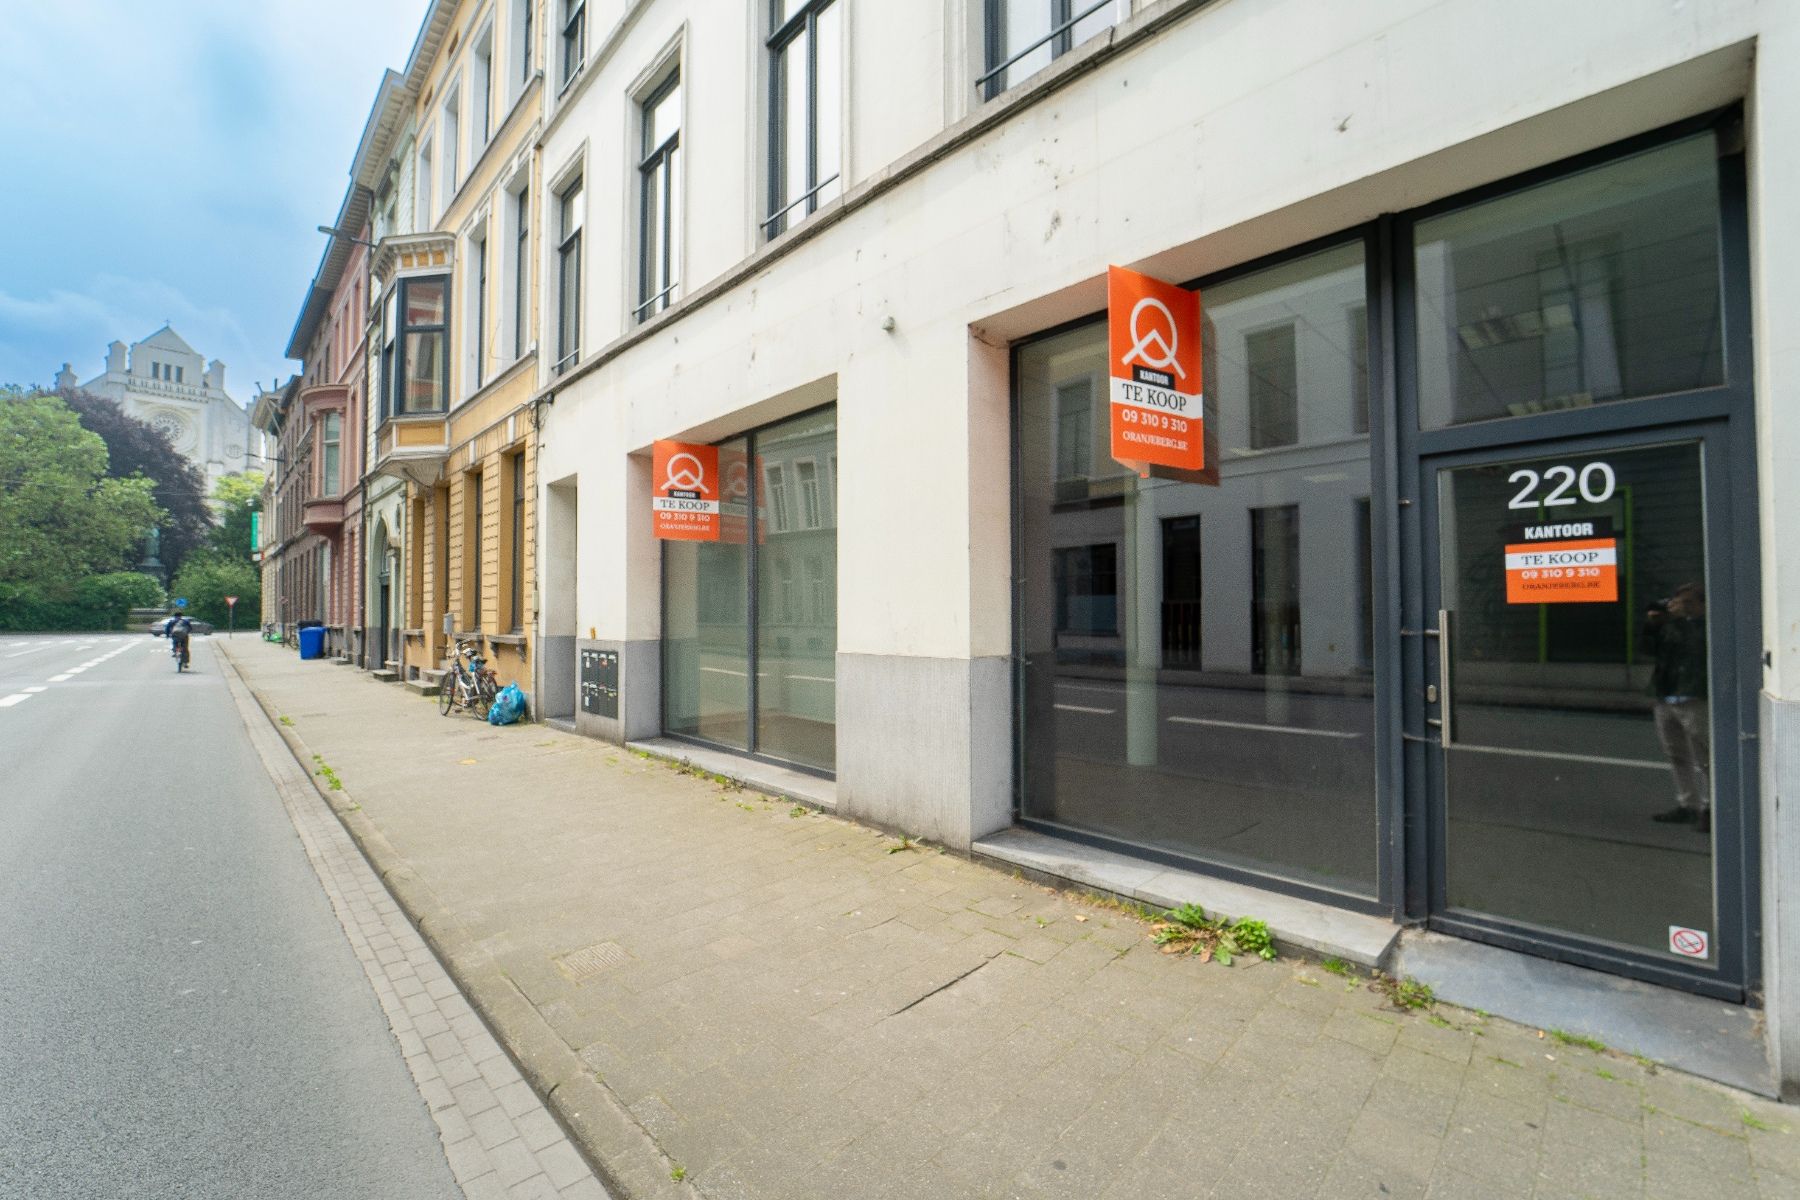 Commerciële ruimte te koop Keizer Karelstraat 220 - 9000 Gent